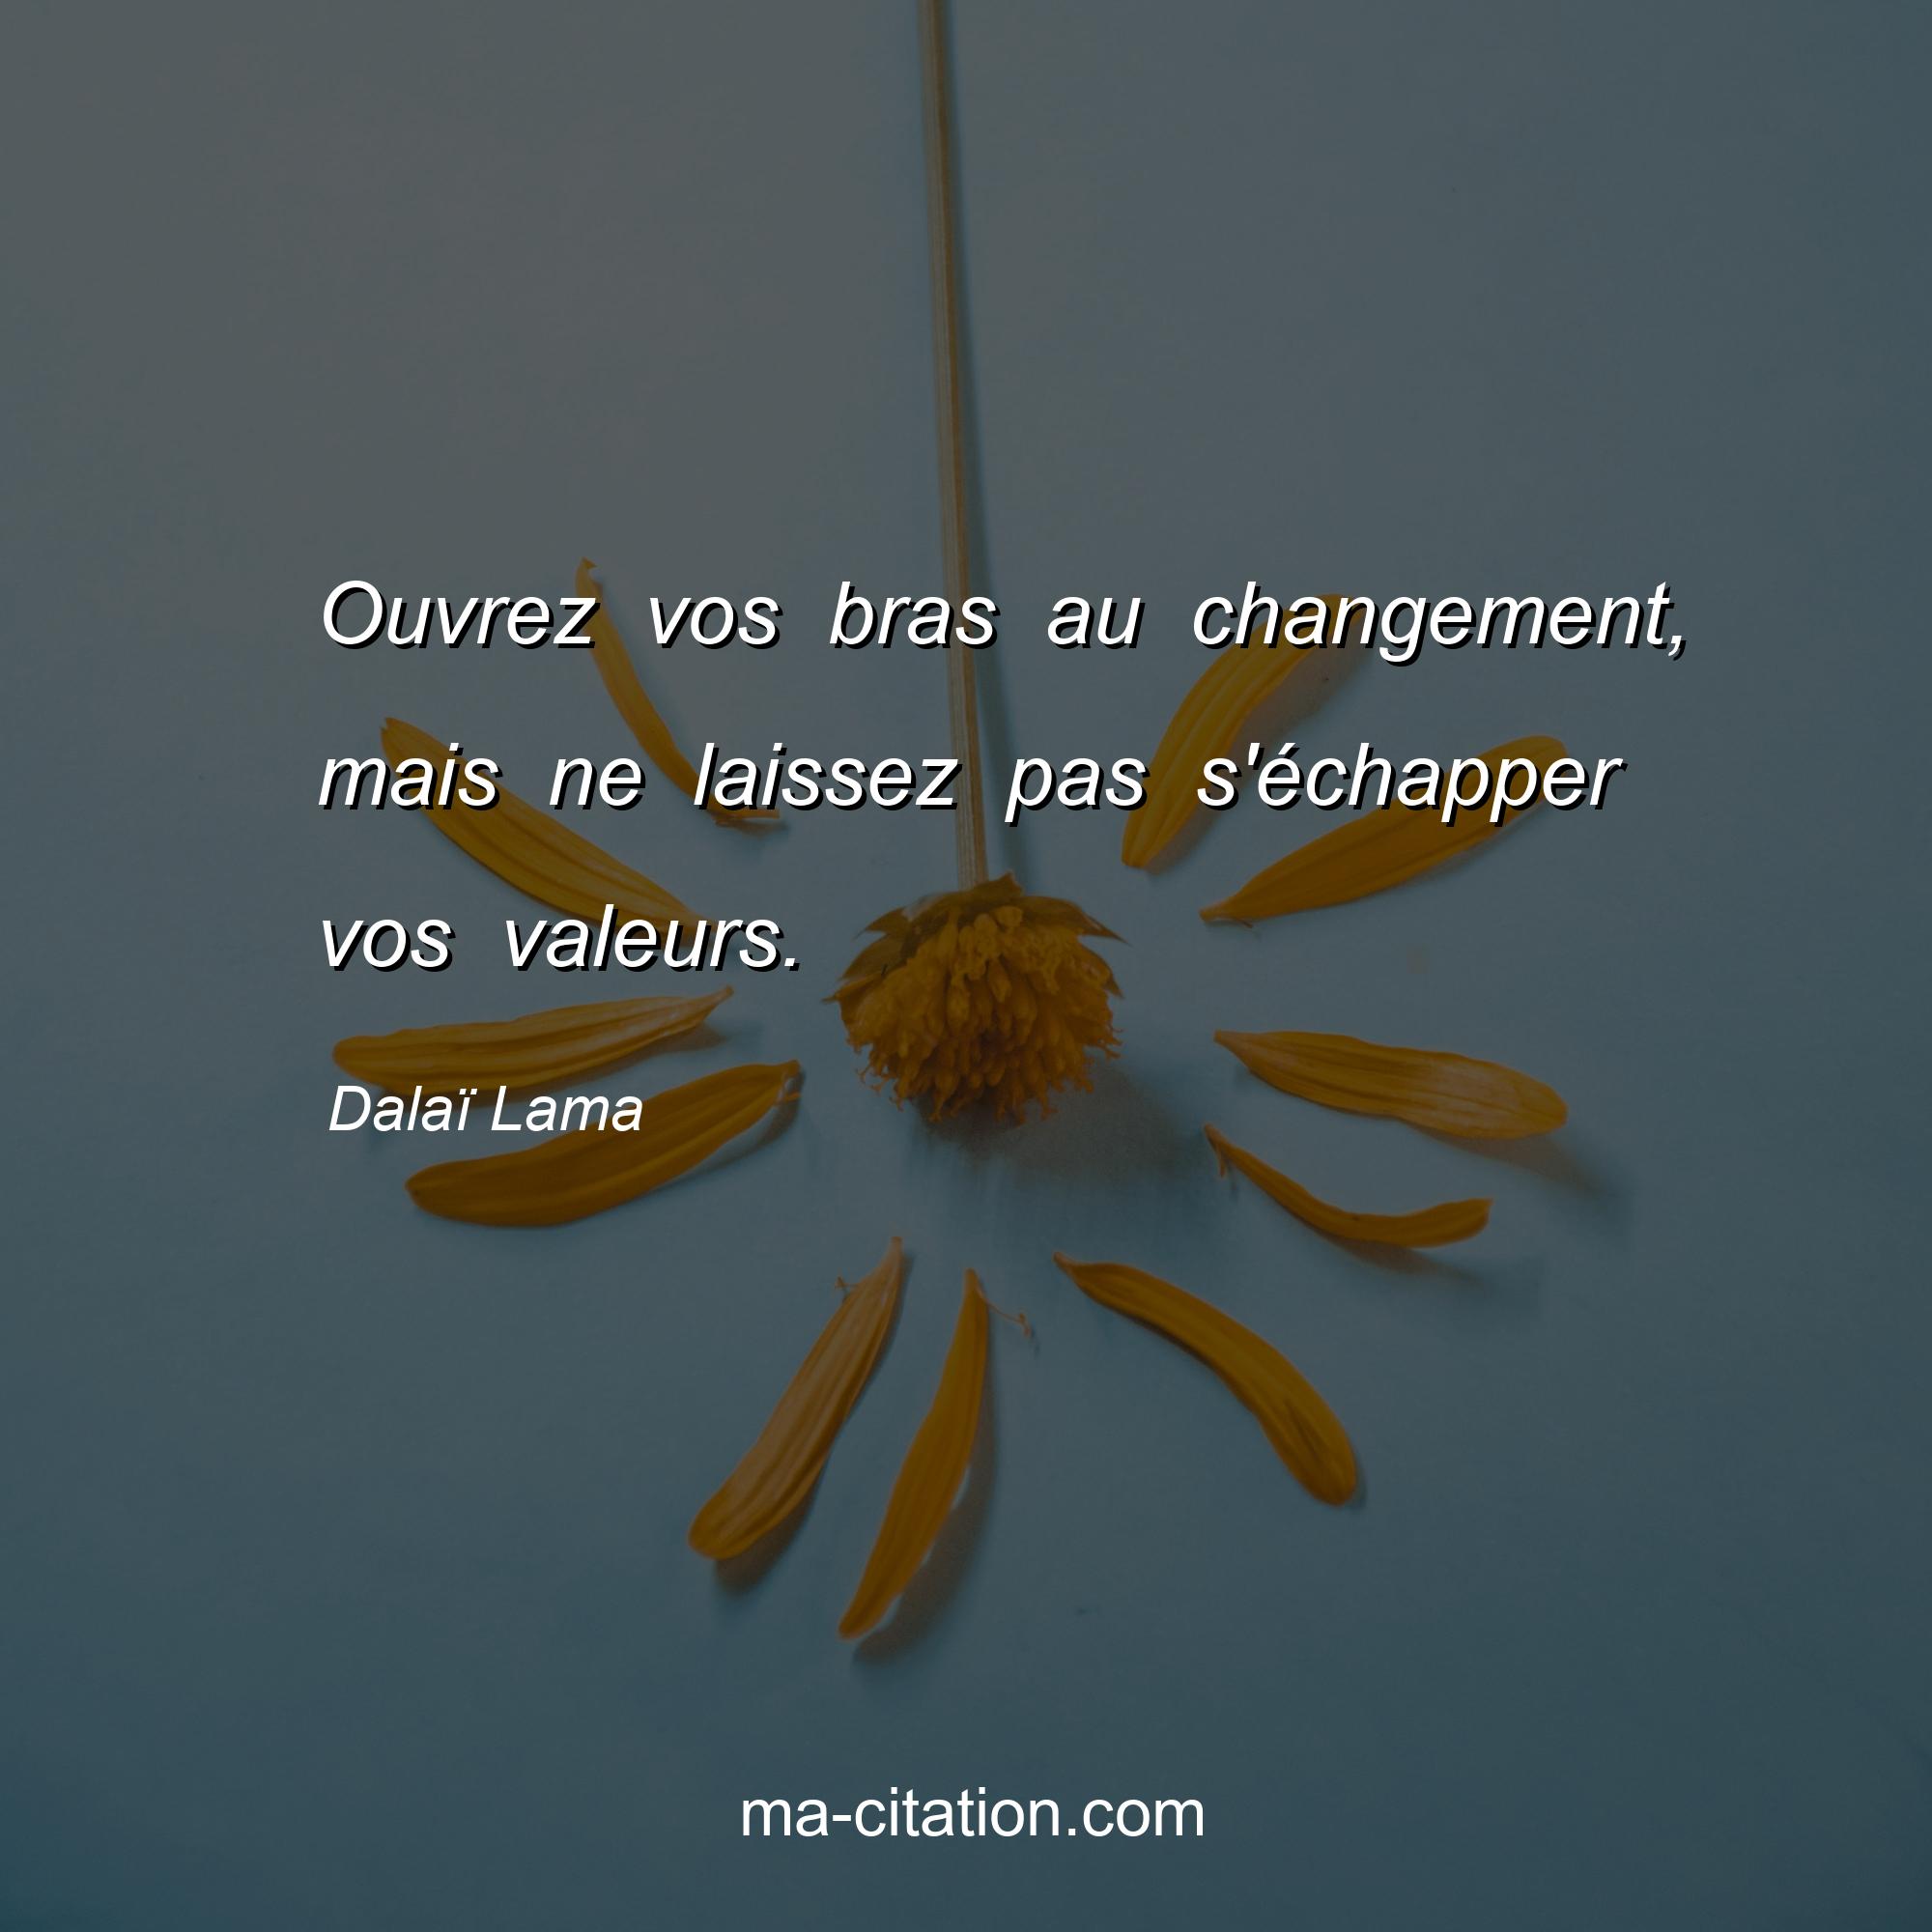 Dalaï Lama : Ouvrez vos bras au changement, mais ne laissez pas s'échapper vos valeurs.